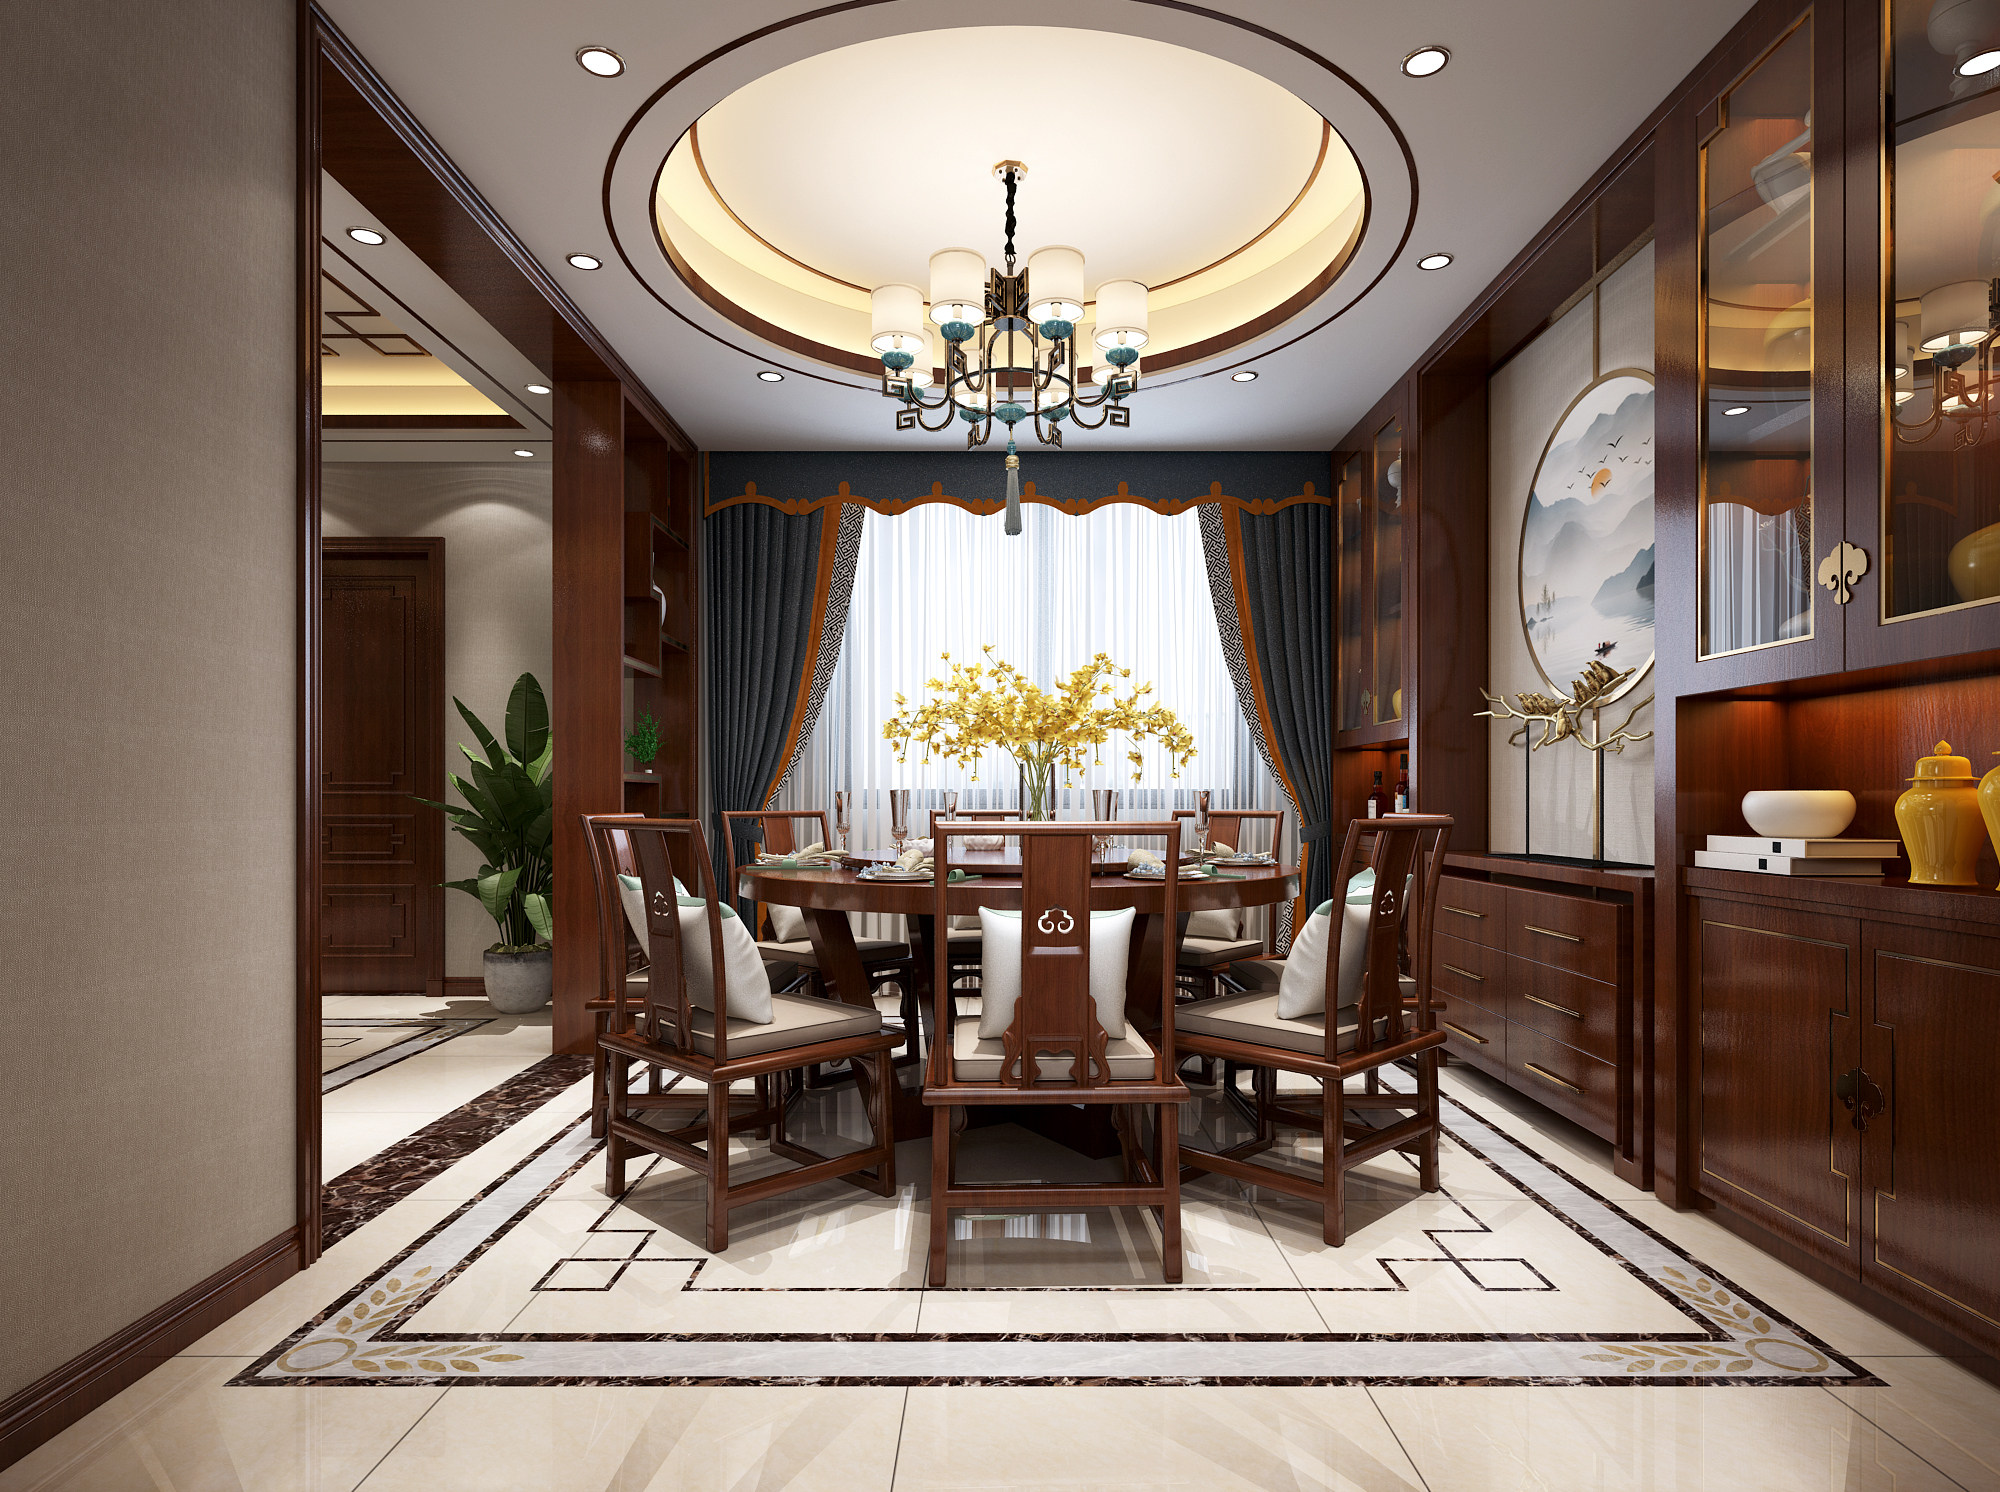 中式古典别墅客厅餐厅 3d模型下载